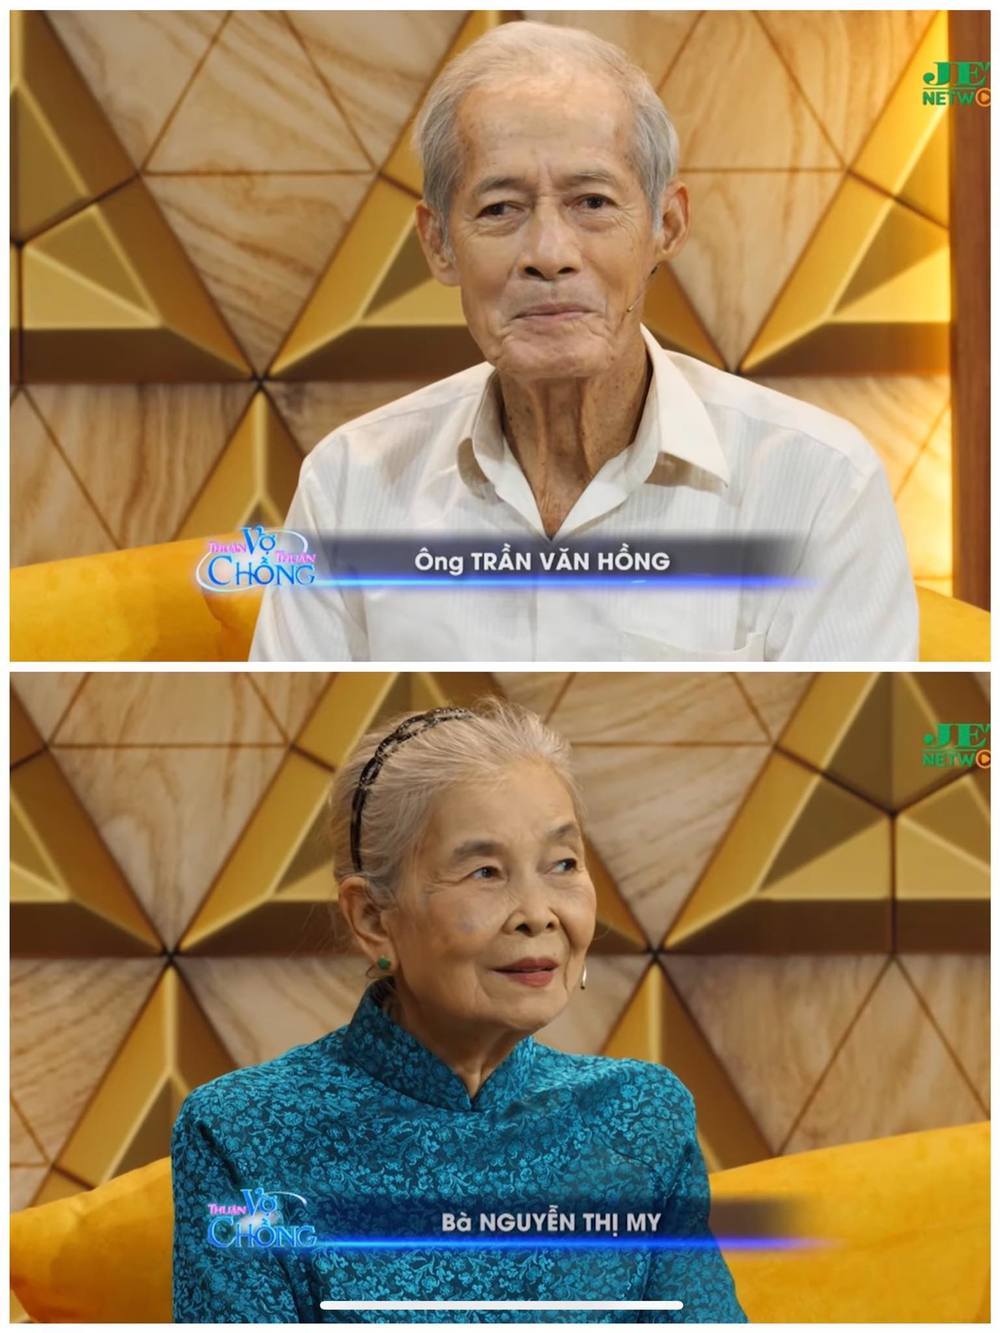  
Bà My và ông Hồng có dịp chia sẻ chuyện tình yêu trong chương trình Thuận vợ thuận chồng. (Ảnh: Chụp màn hình YouTube Jet TV Show)